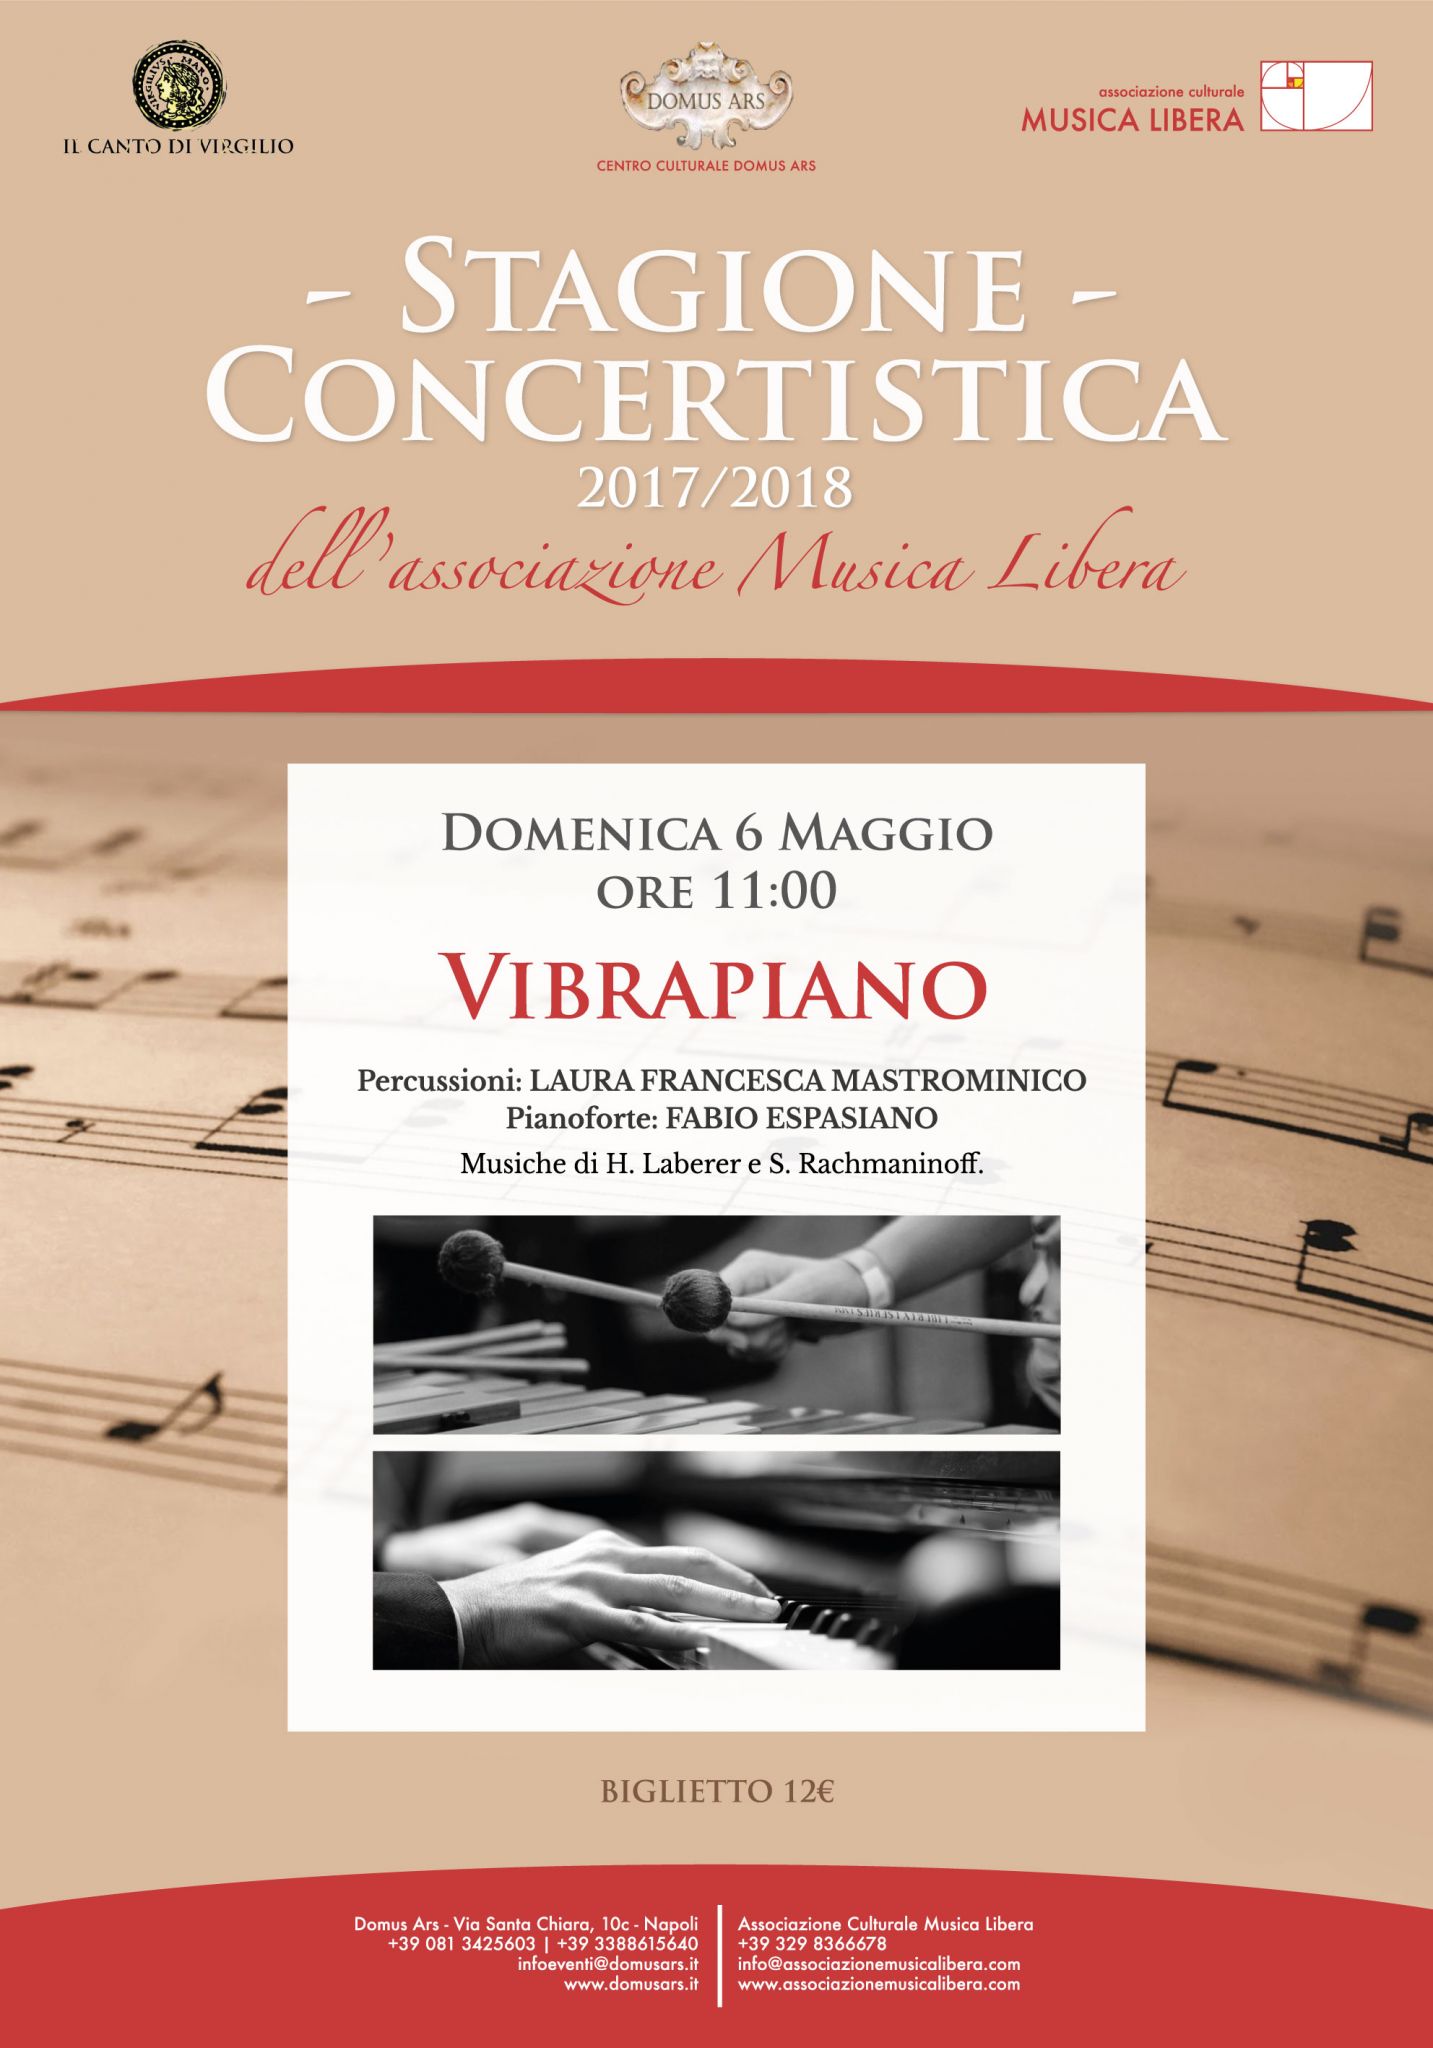 L’associazione Musica Libera ospita il duo Vibrapiano. Domenica 6 maggio al centro culturale Domus Ars